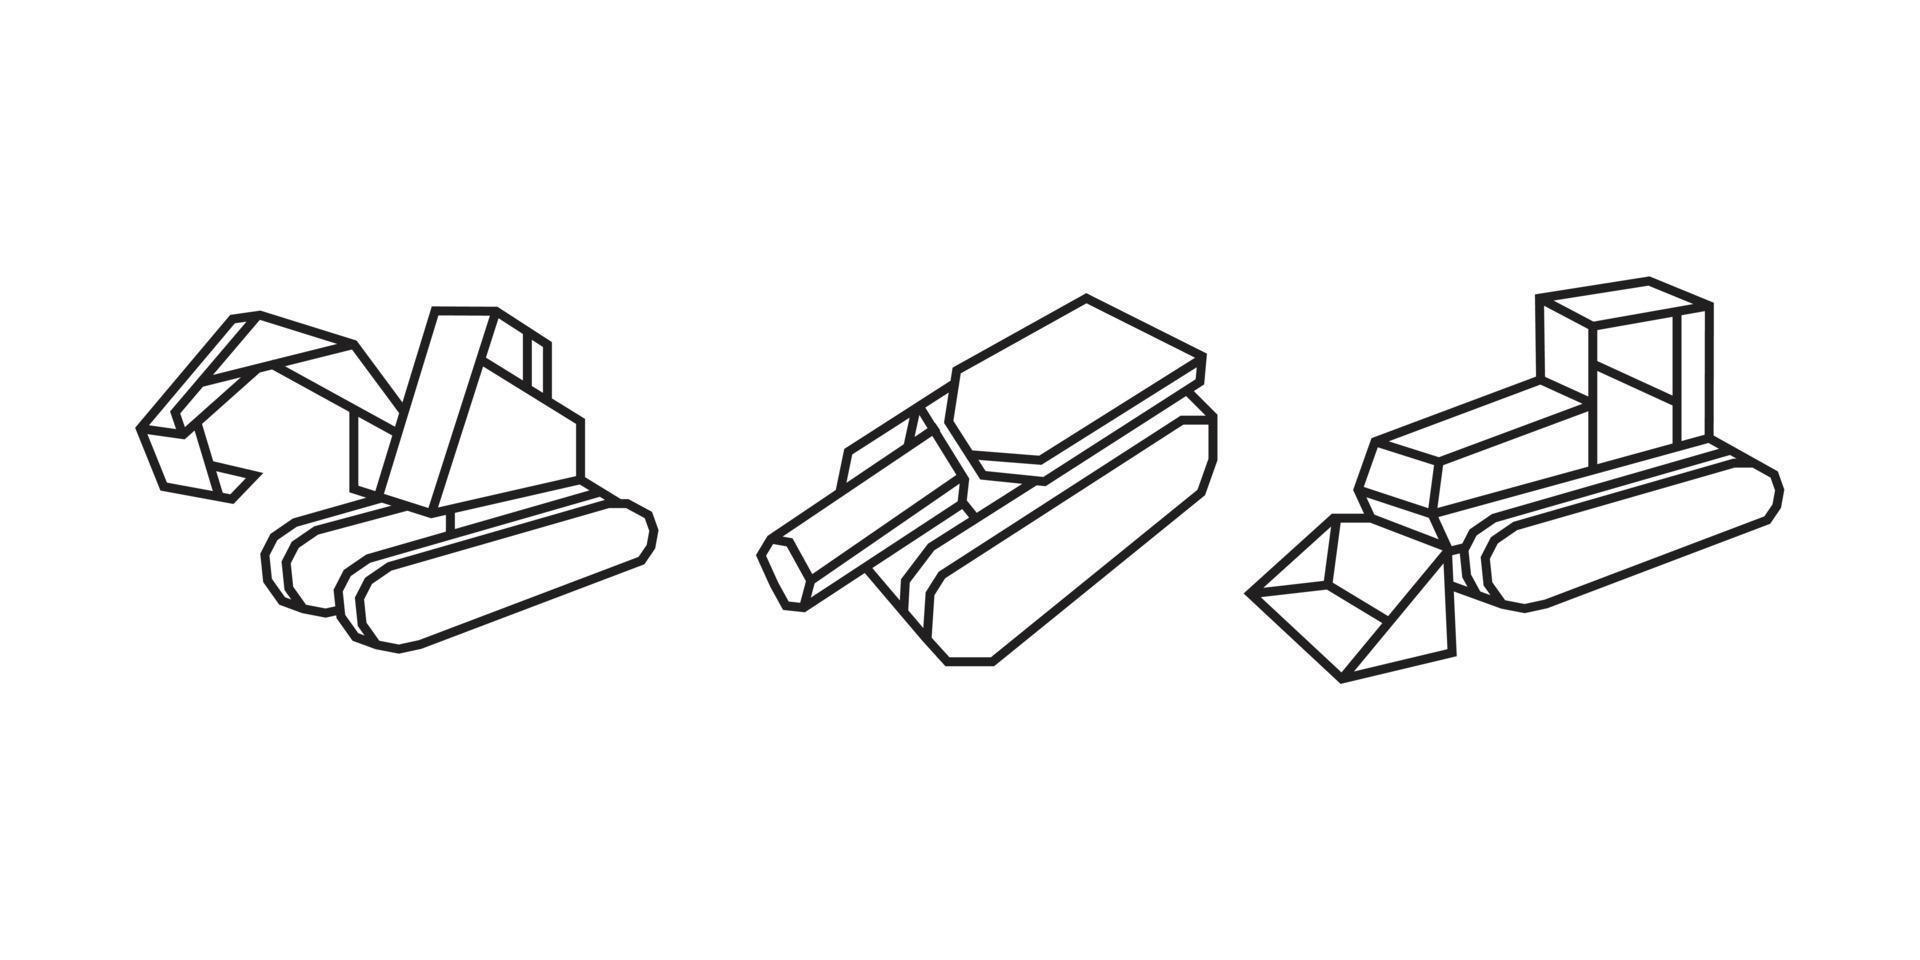 illustraties van zwaar materieel in origami-stijl vector